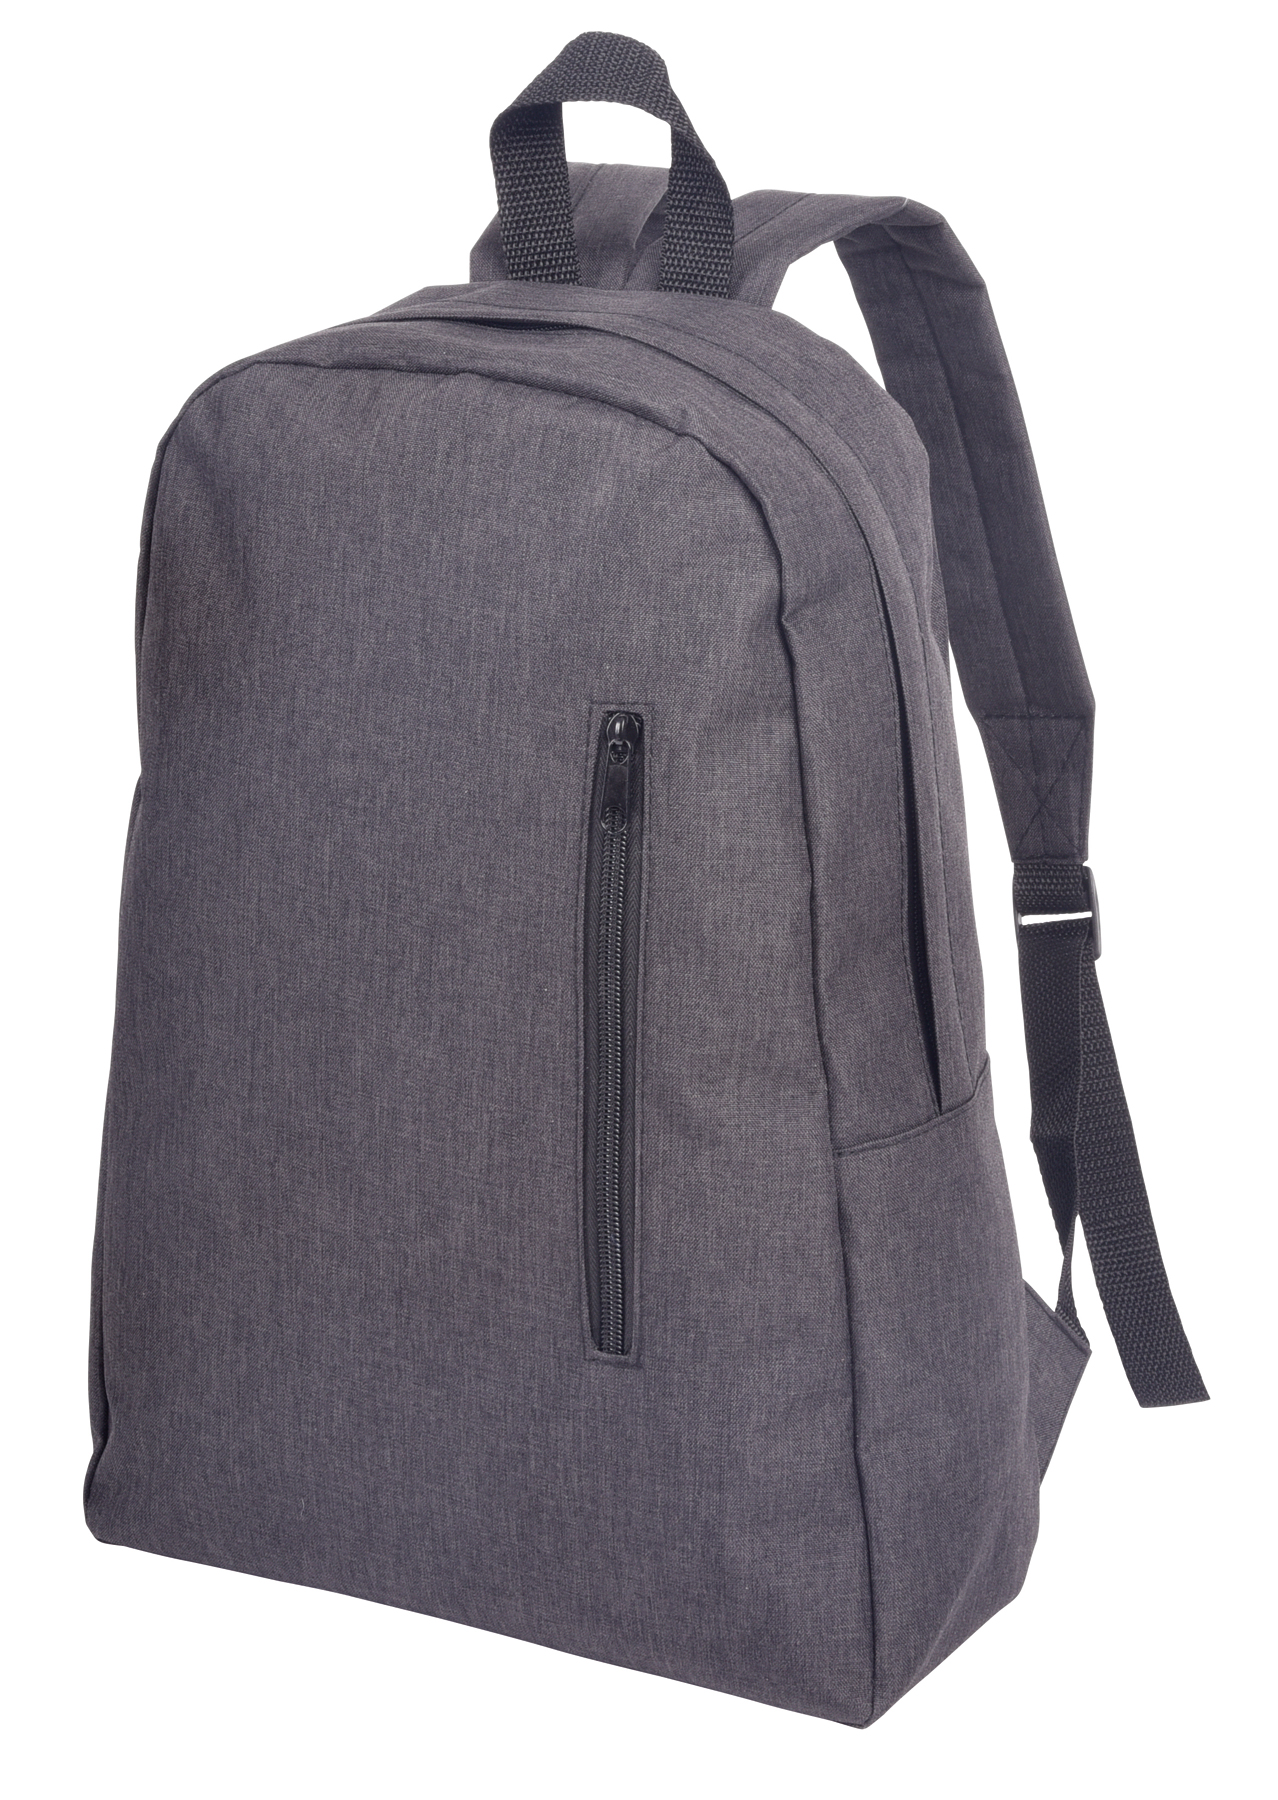 Backpack OSLO - stone grey